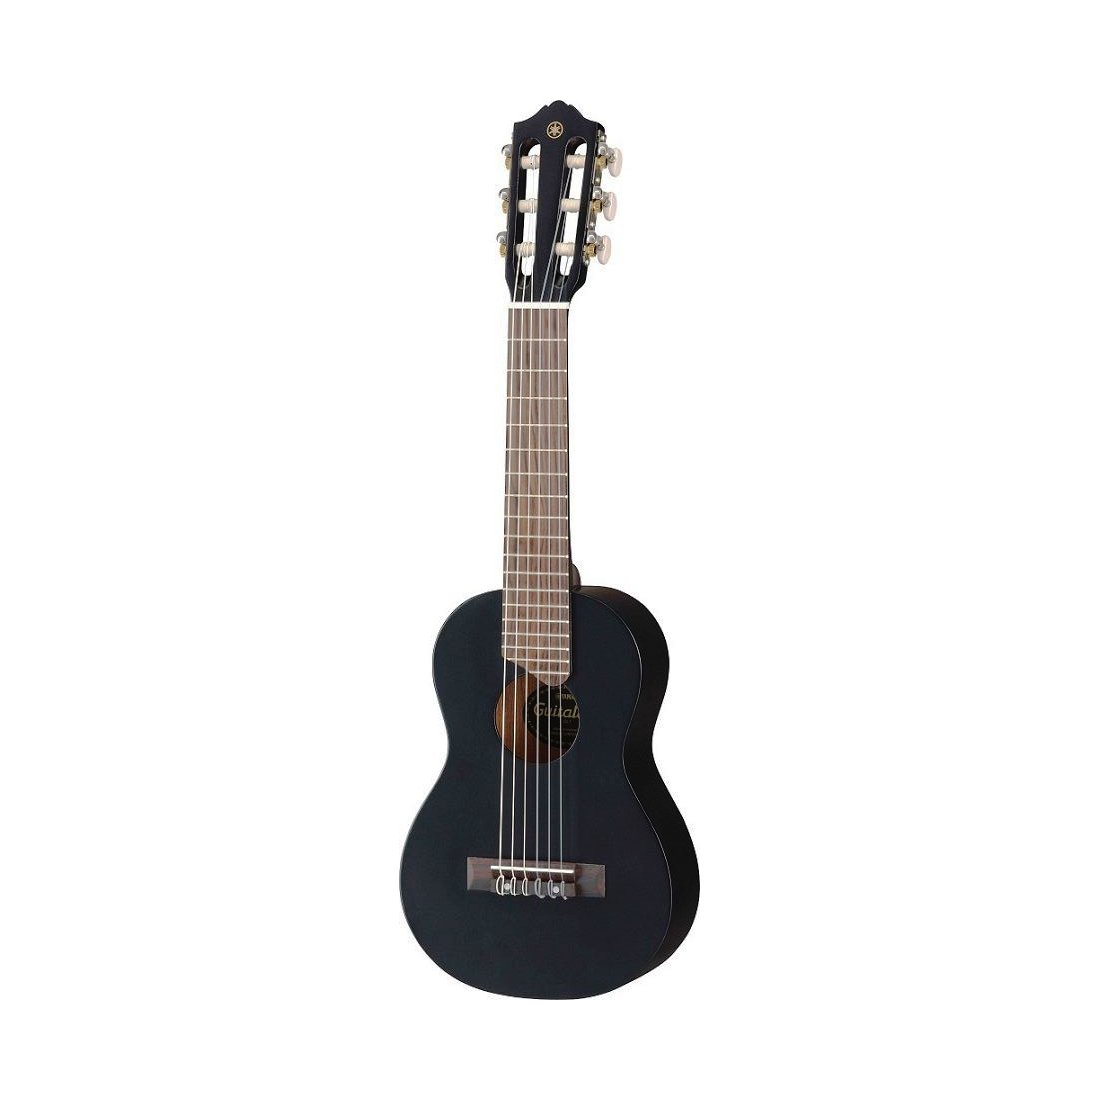 YAMAHA GL1 BLACK классическая гитара малого размера (433 мм)